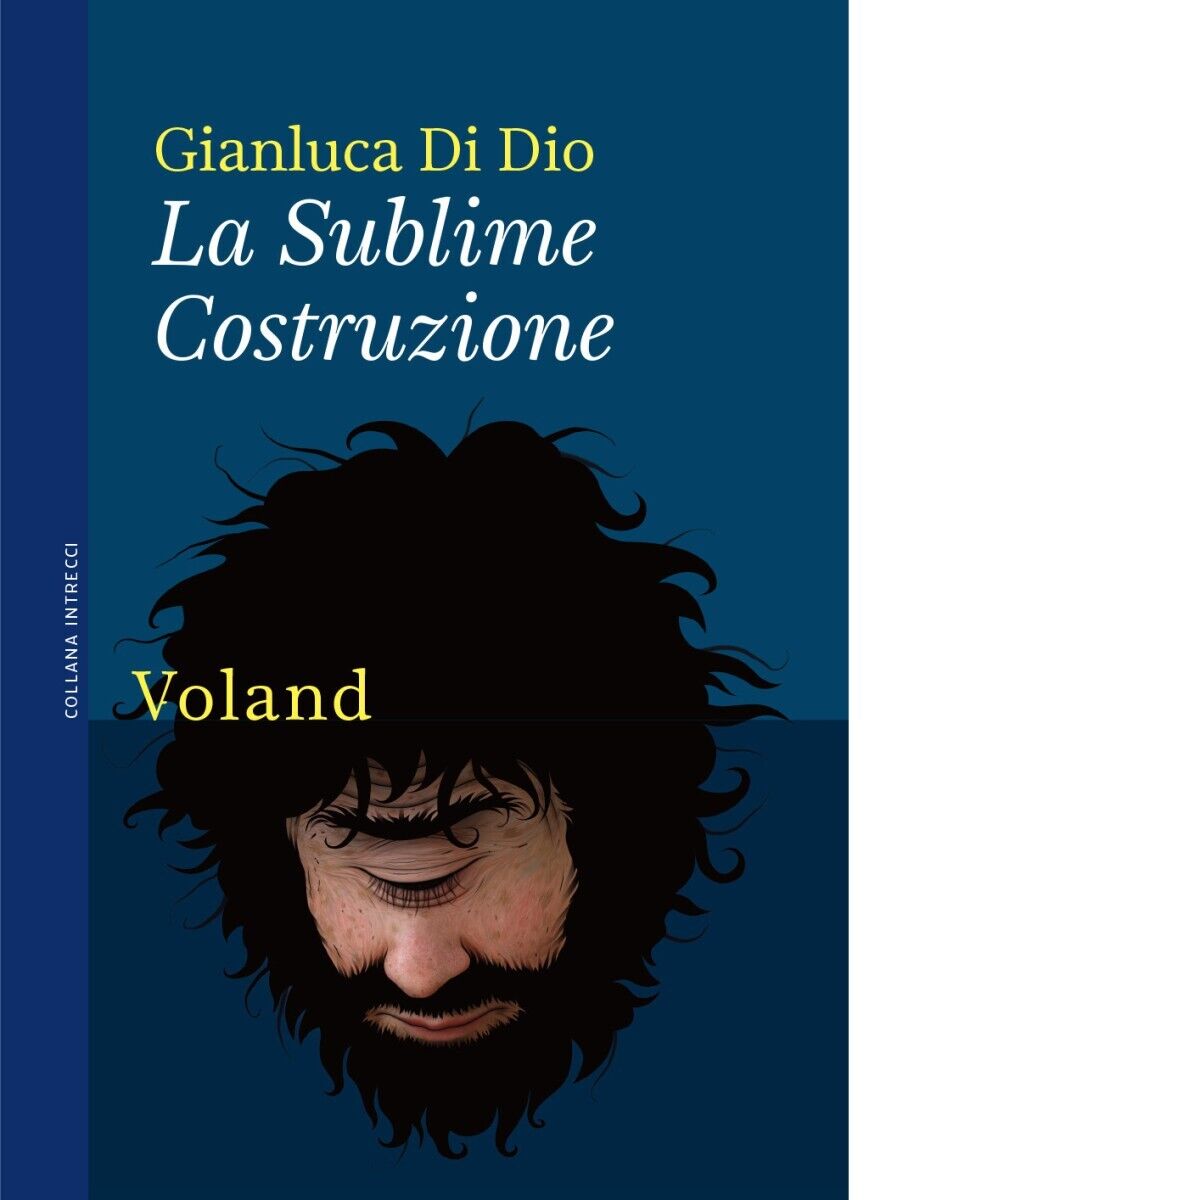 La Sublime Costruzione di Gianluca Di Dio, 2021, Voland